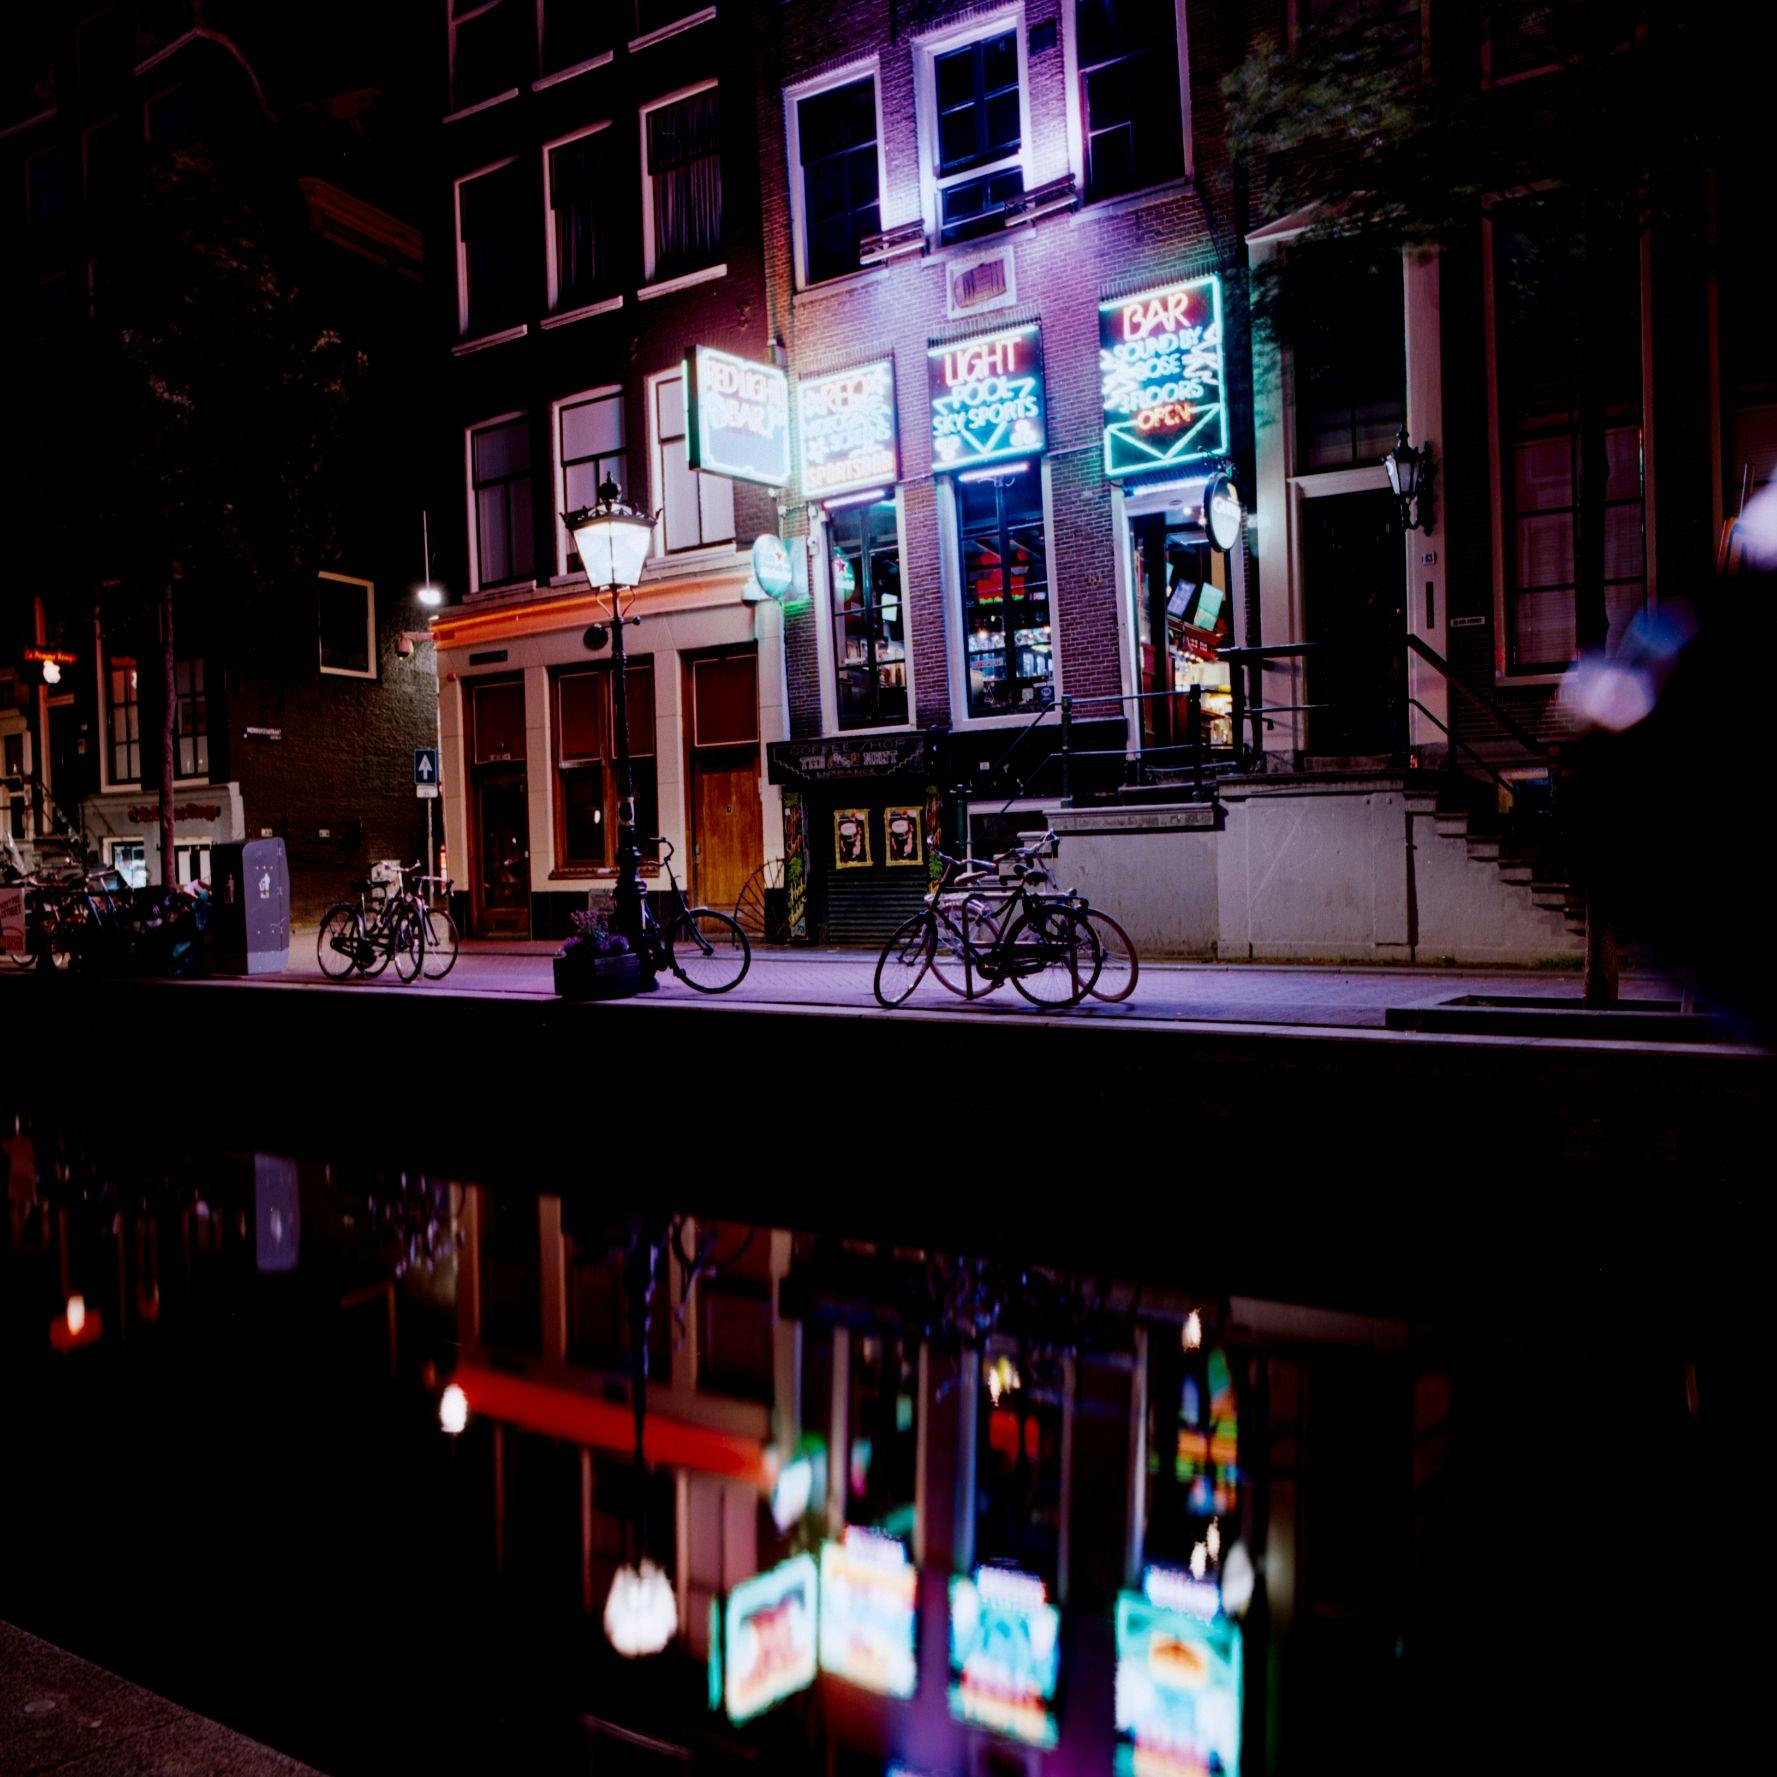 Descubra o lado LGBT de Amsterdã com um morador local